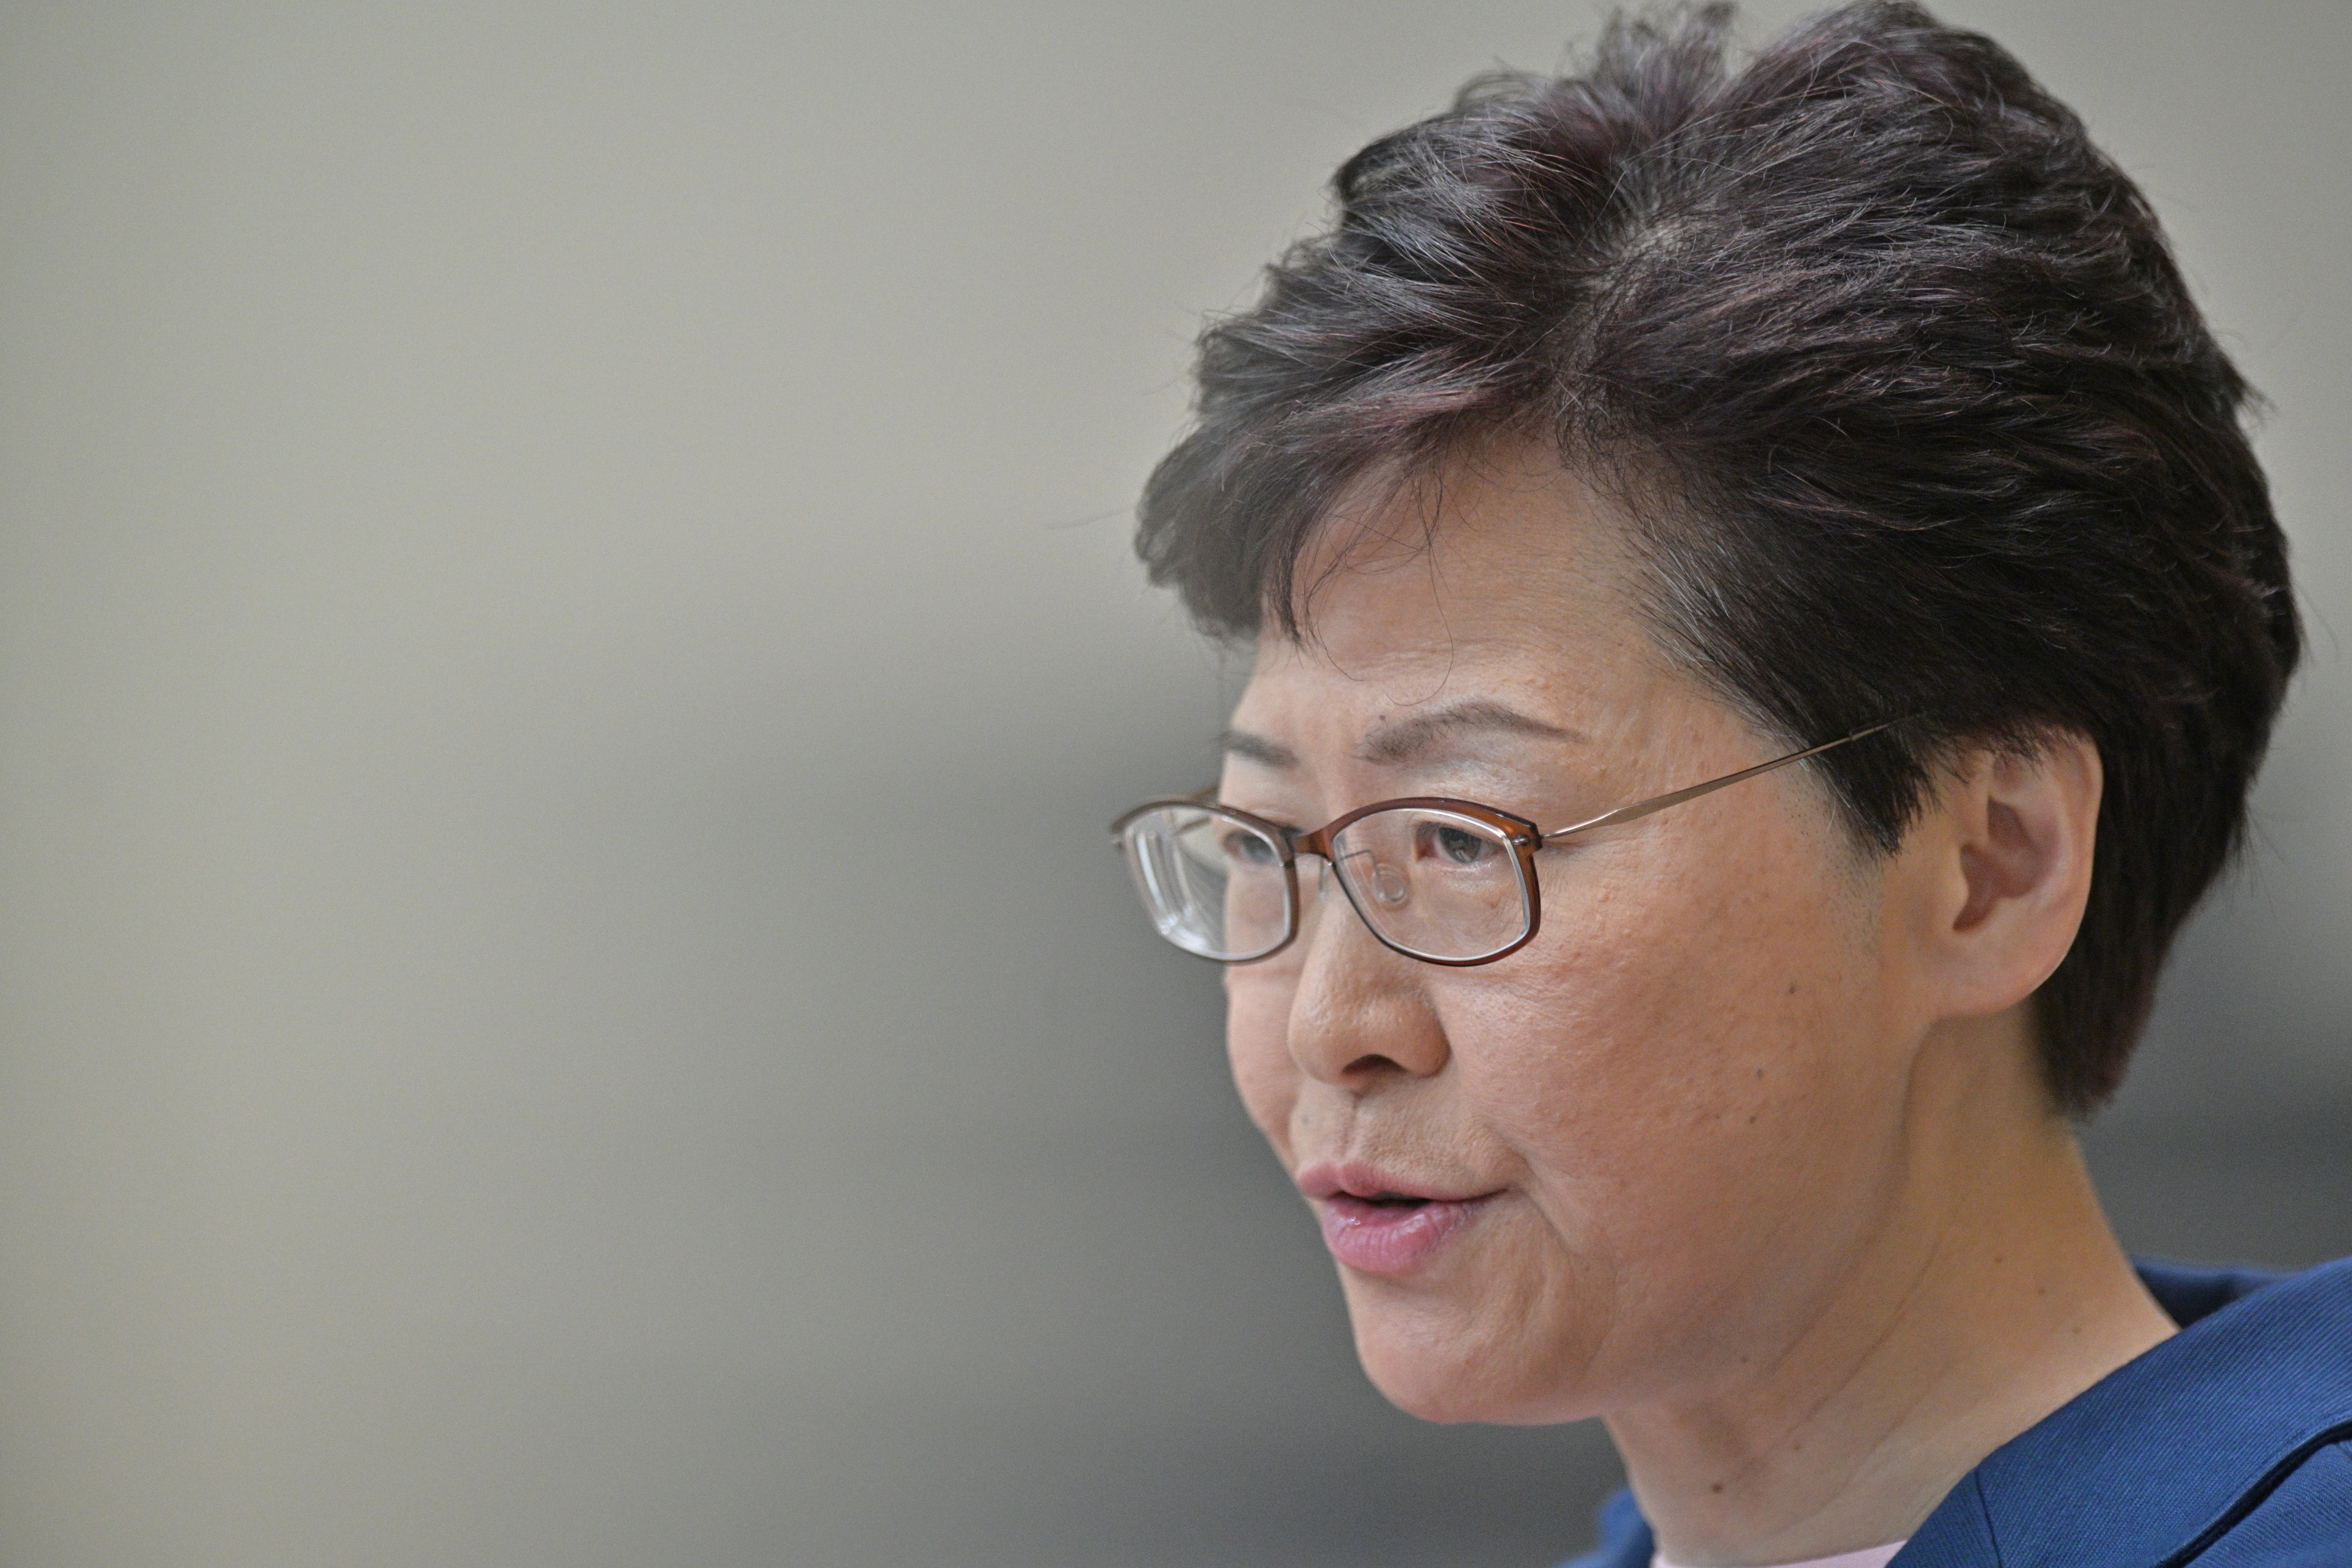 Hong Kong's leader warns city faces 'path of no return'